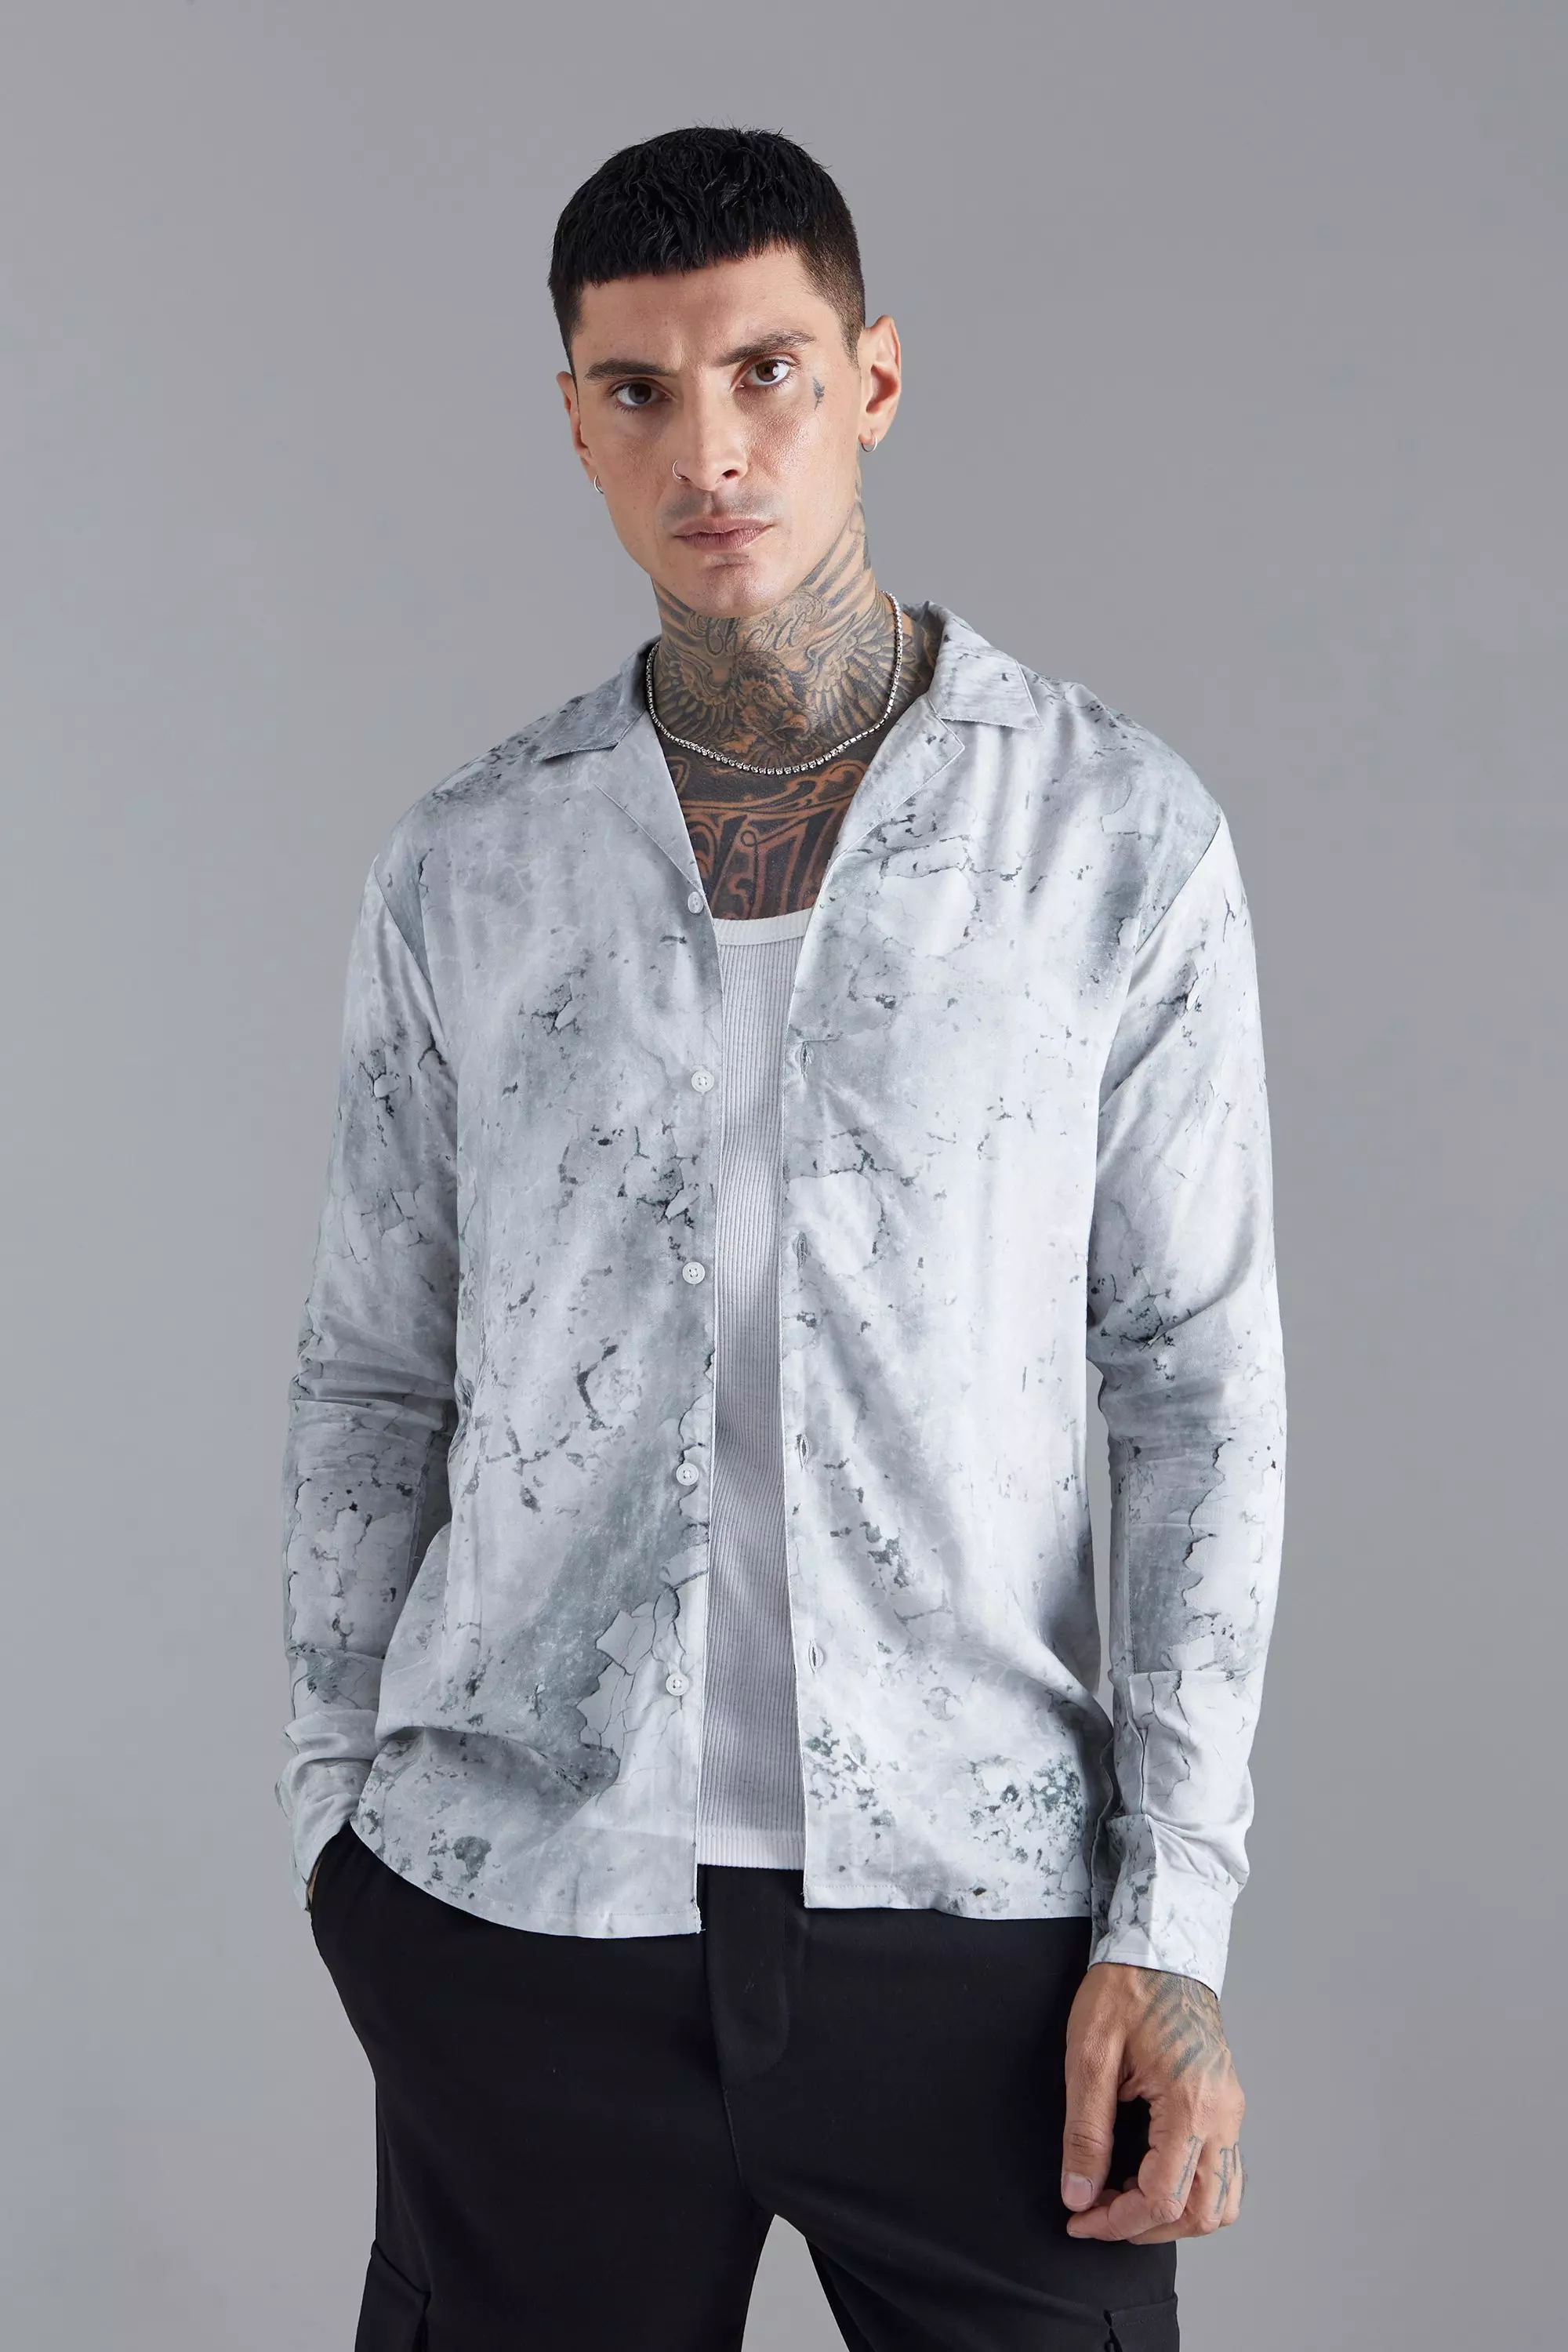 Long Sleeve Viscose Abstract Print Shirt Grey